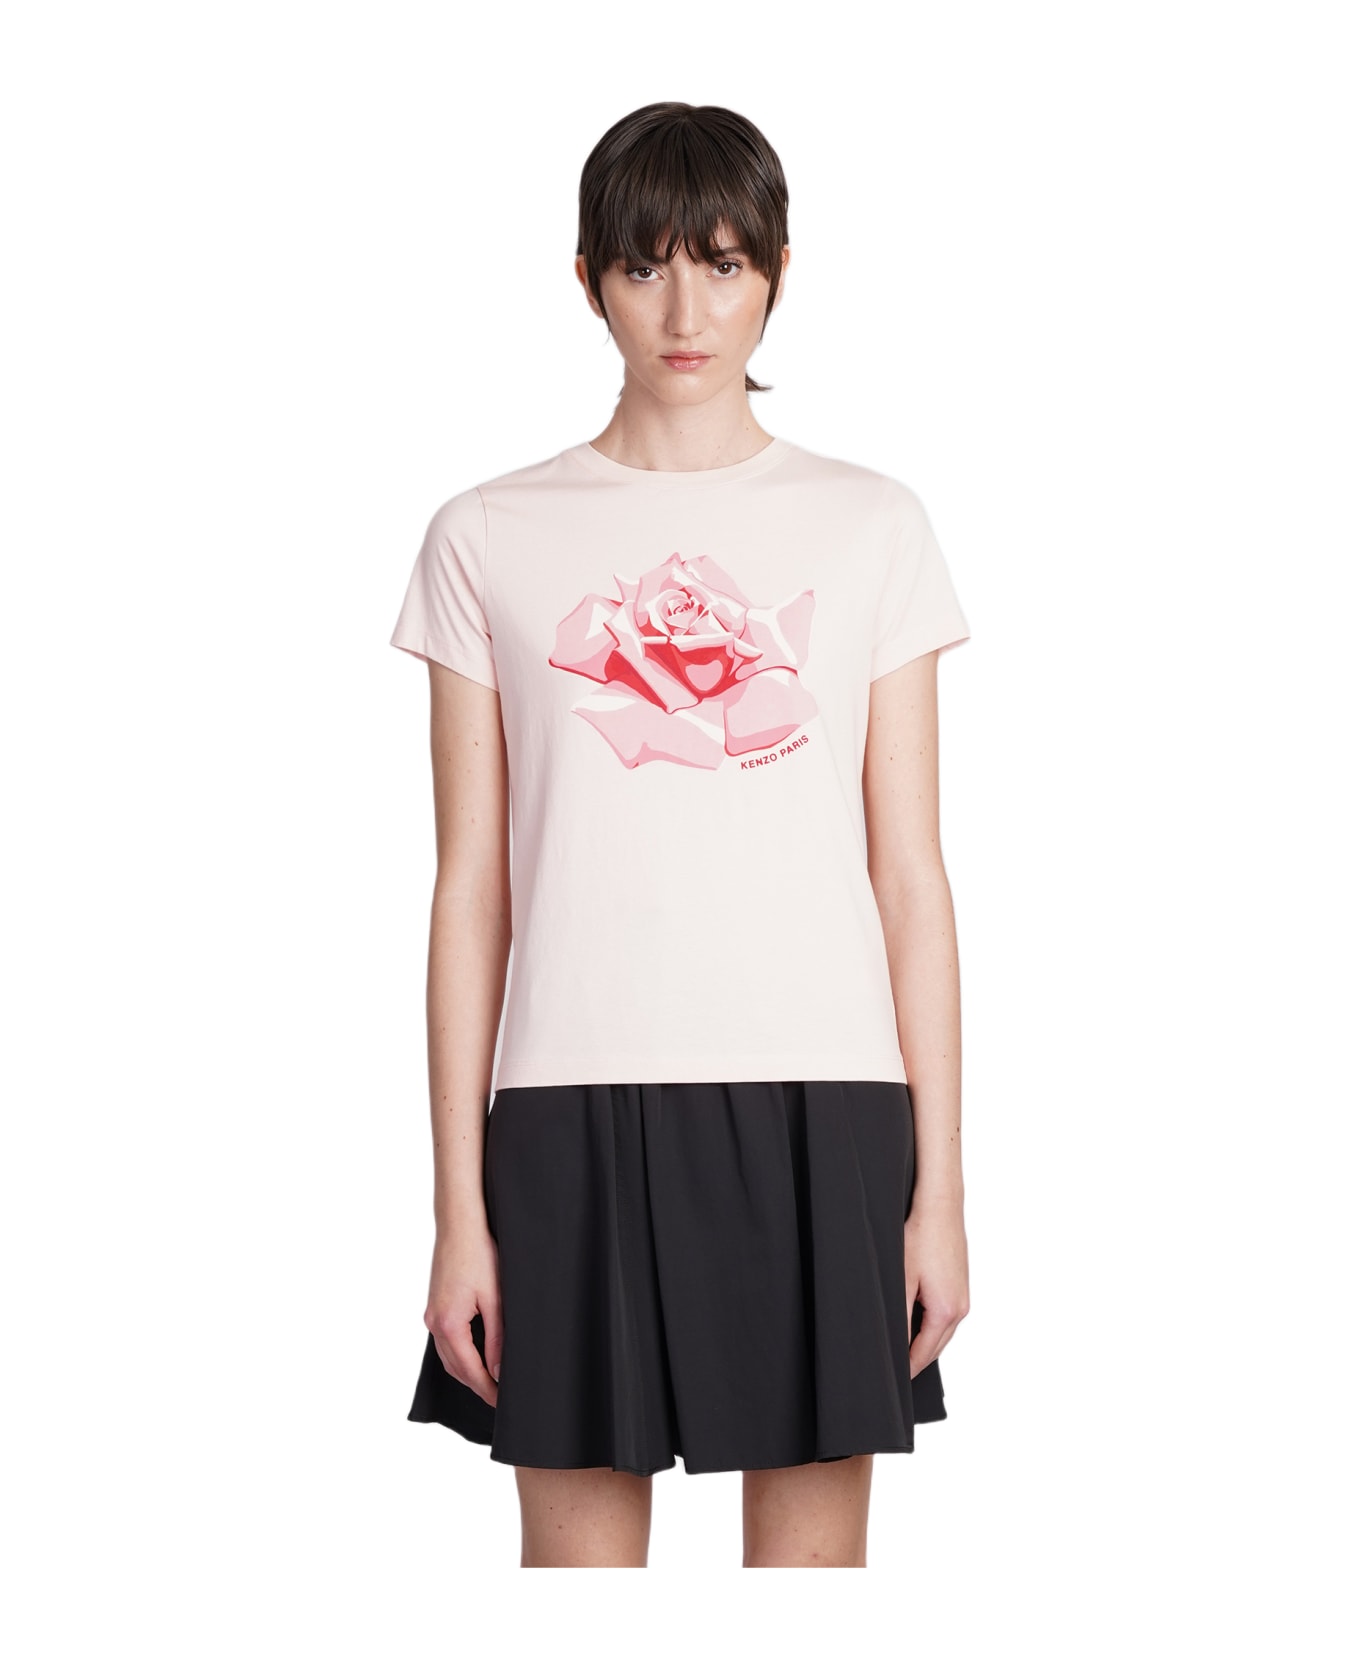 Kenzo T-shirt In Rose-pink Cotton - rose-pink